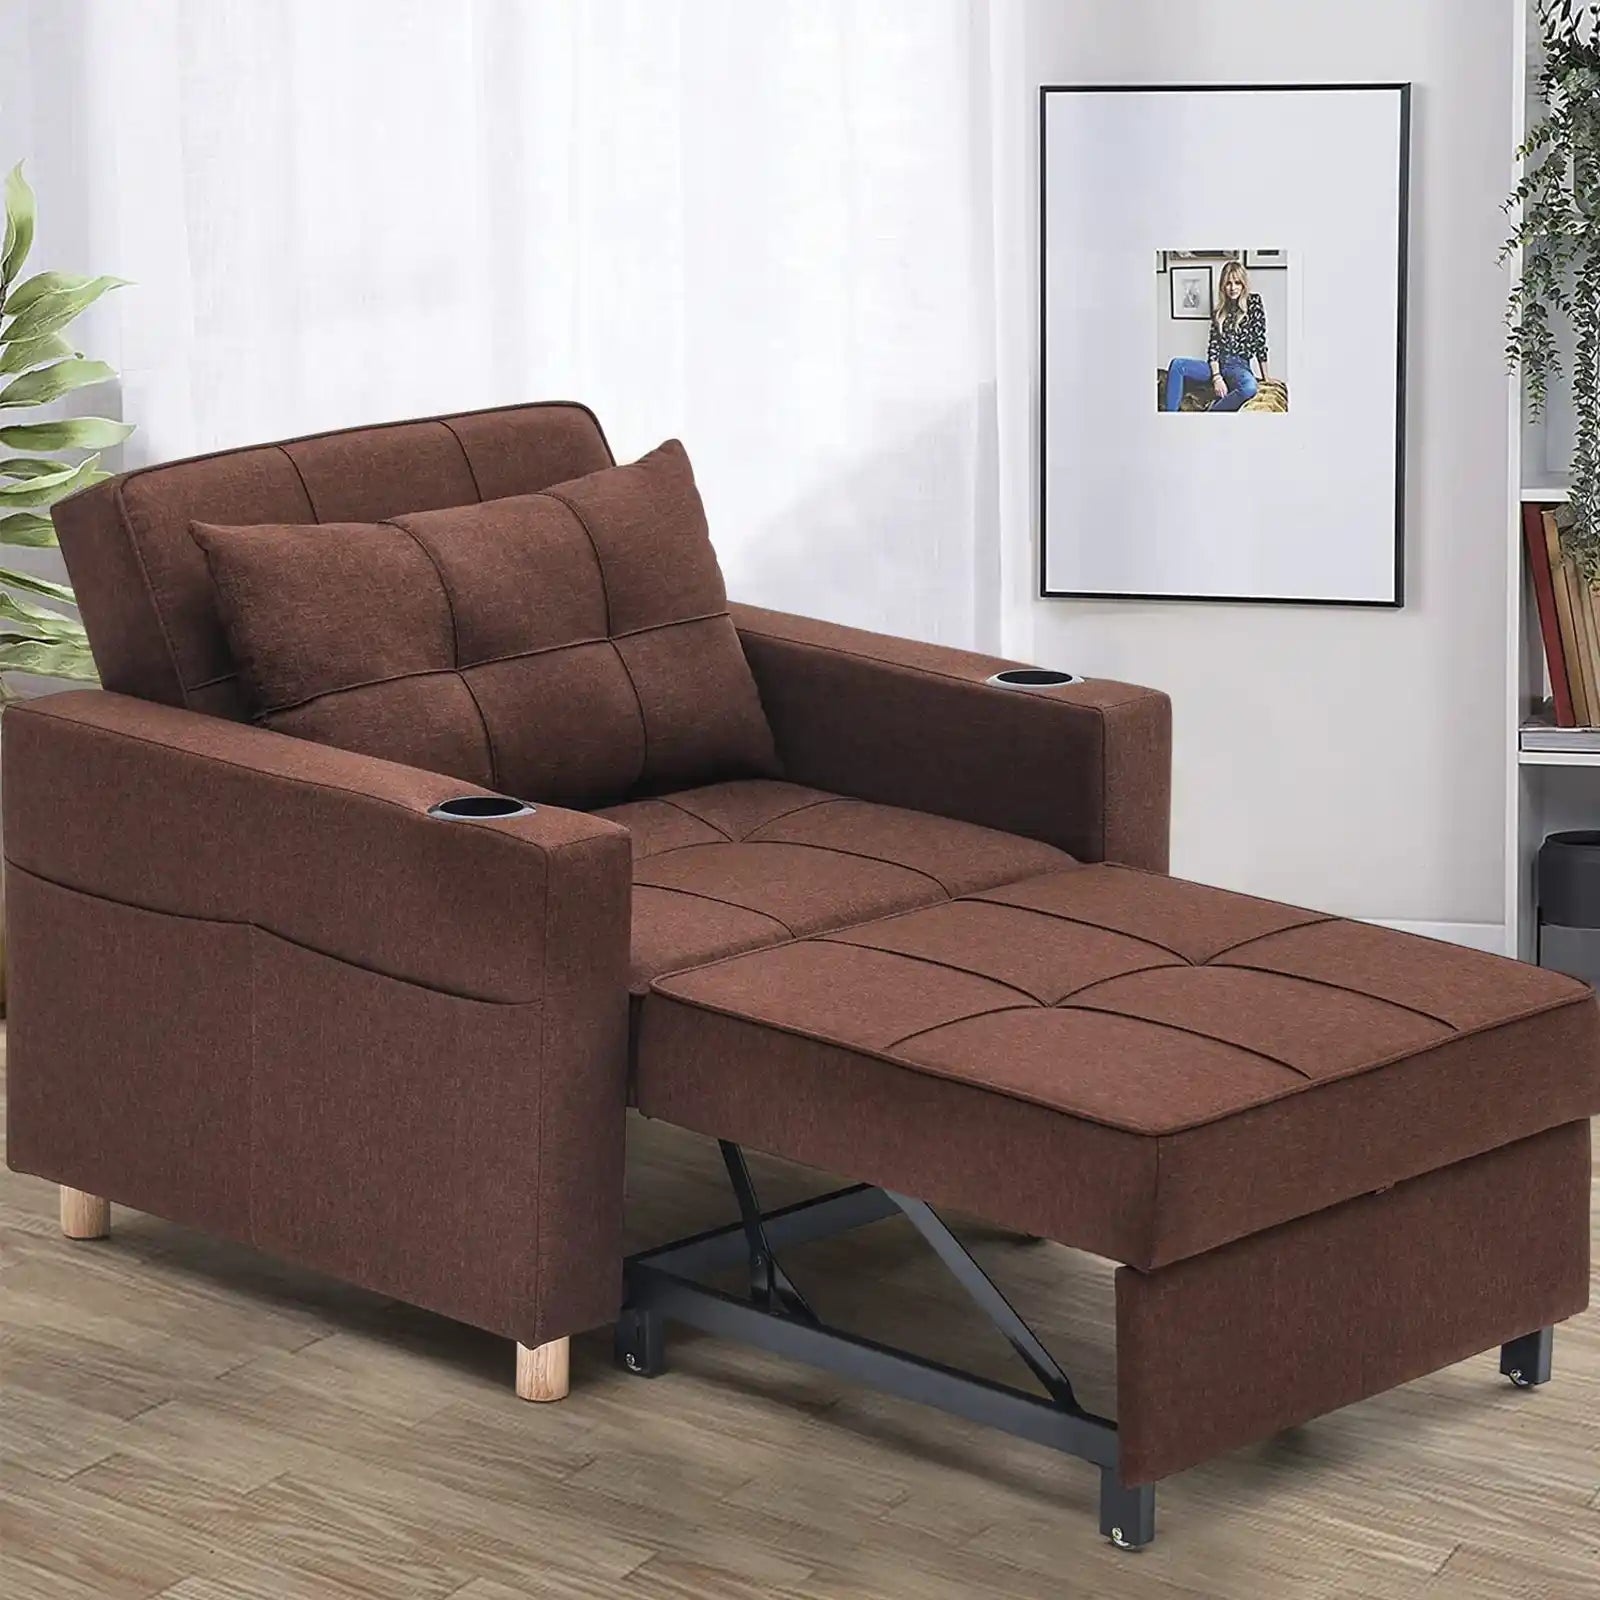 Sofá cama plegable silla convertible piso sillas muebles para sala de  estar, dormitorio, hogar, interior, café.